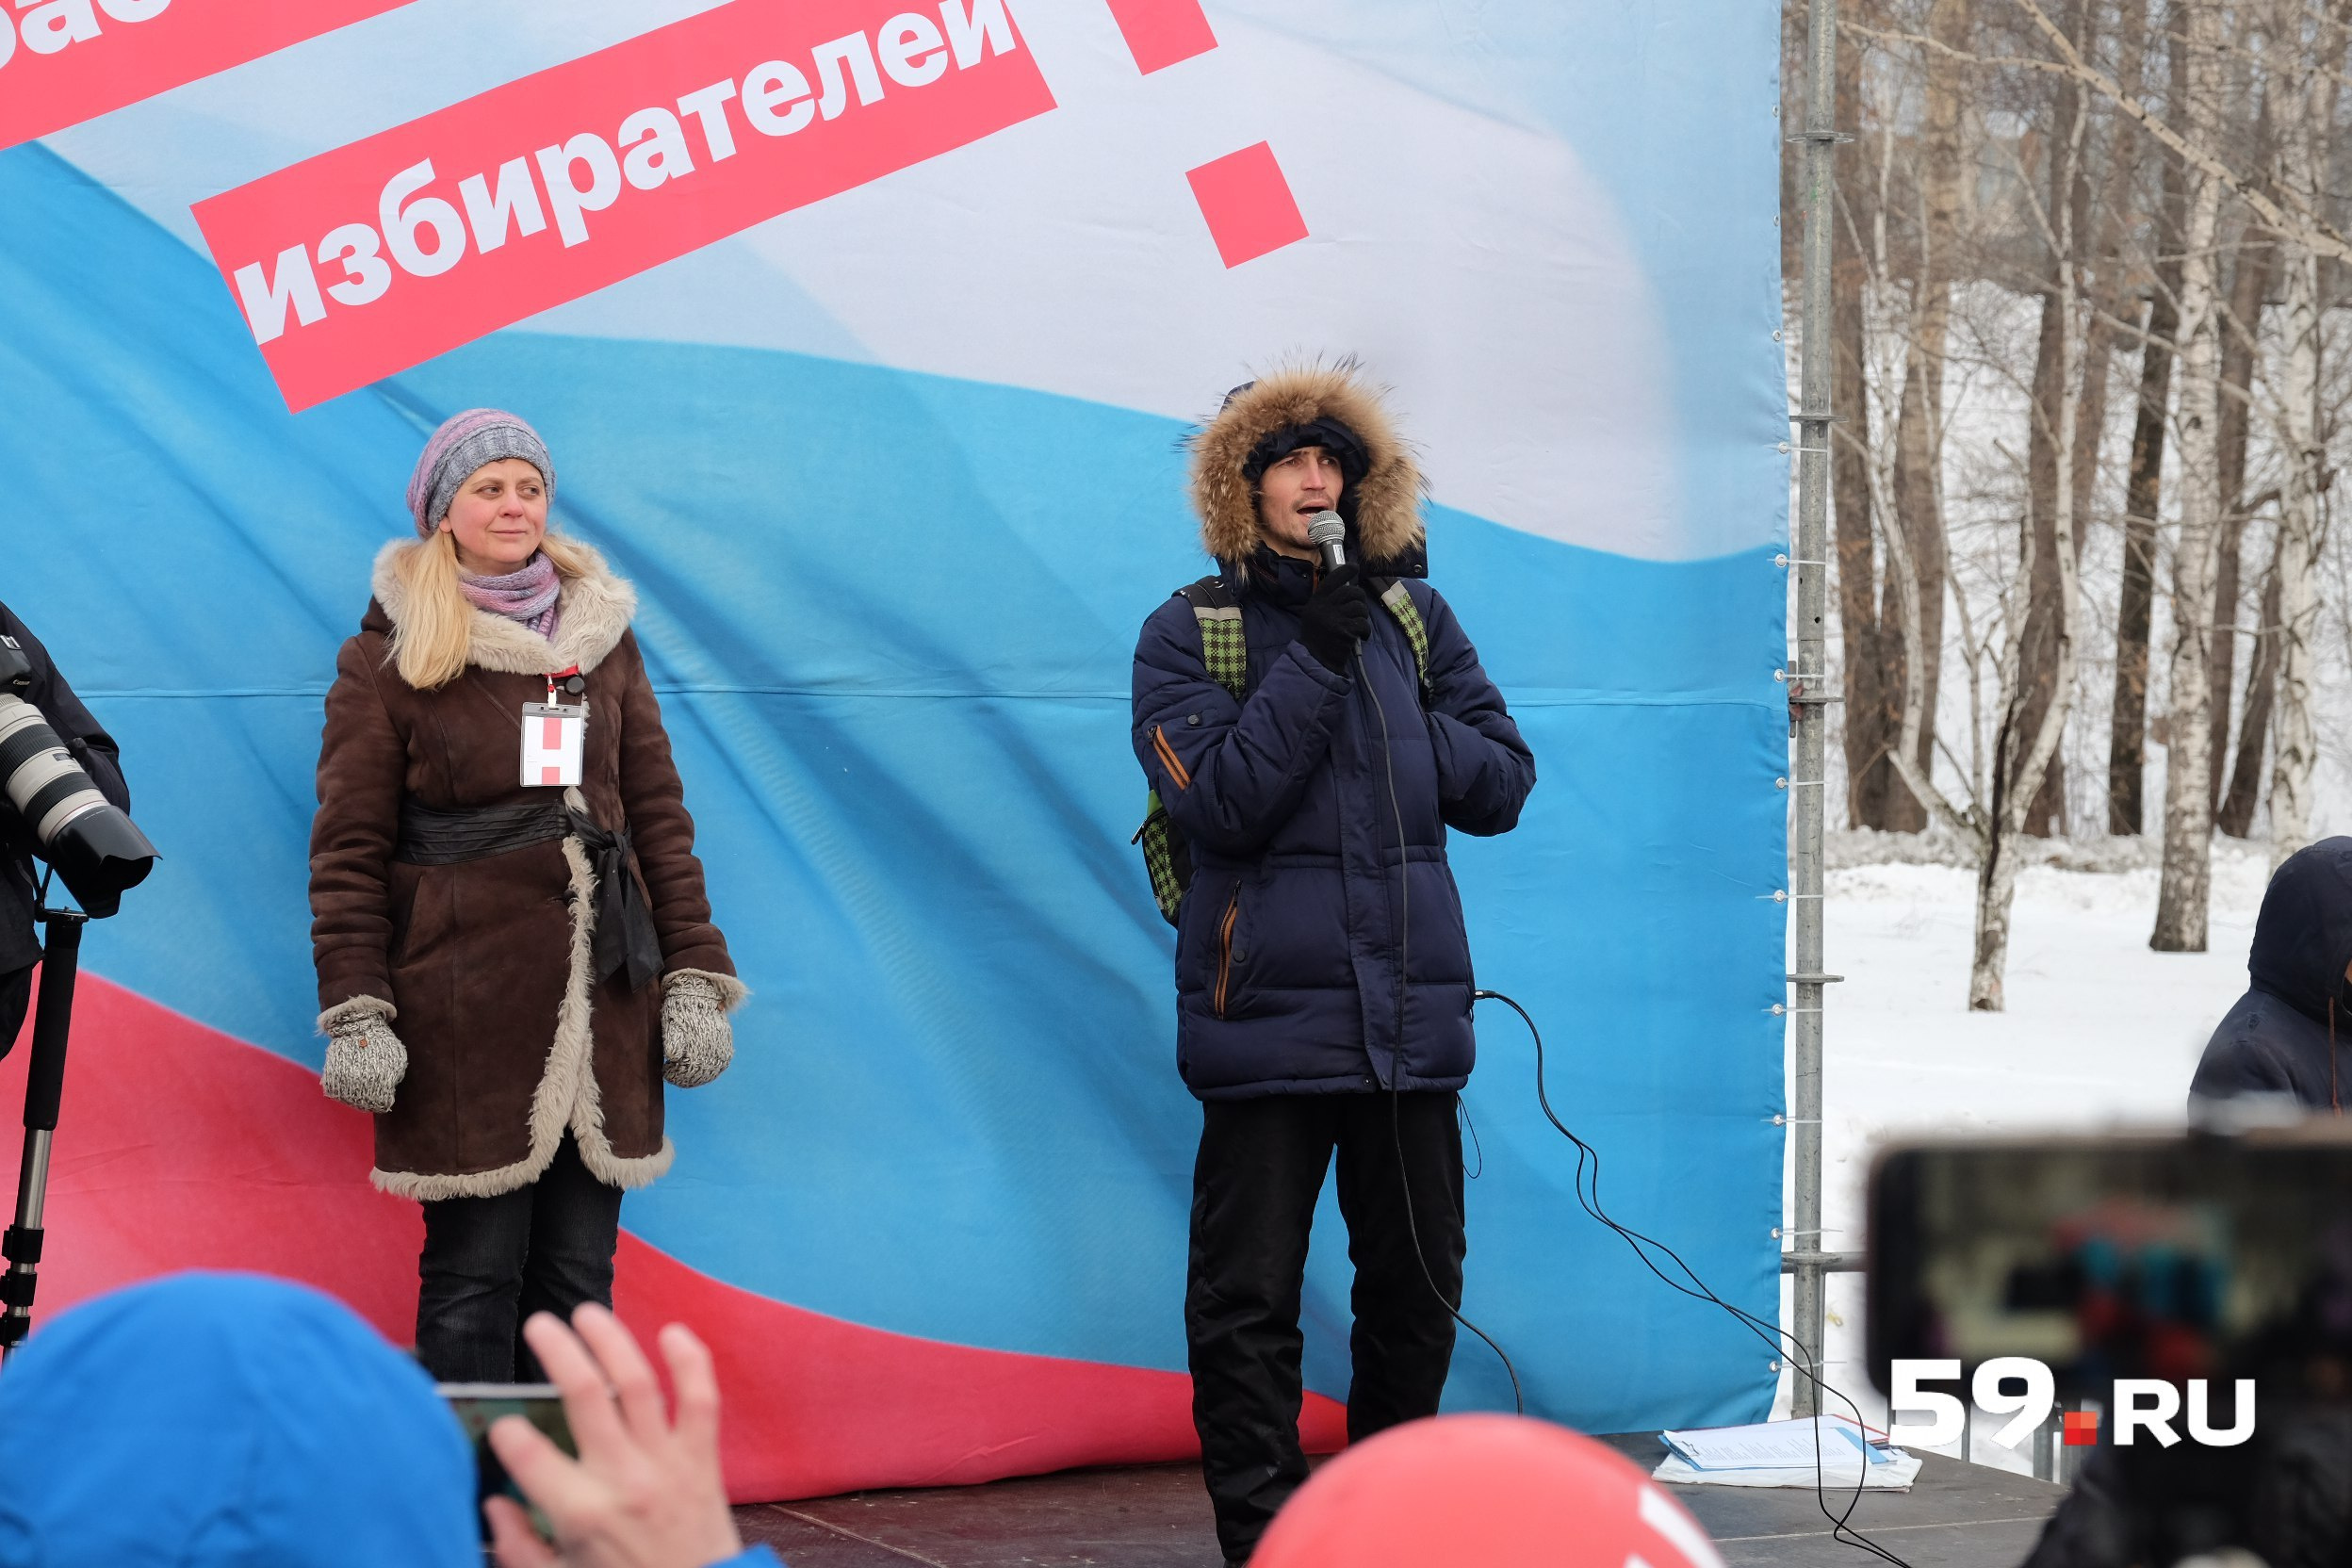 Юрий Бобров рассказал, что изначально акцию собирались проводить у памятника Героям фронта и тыла